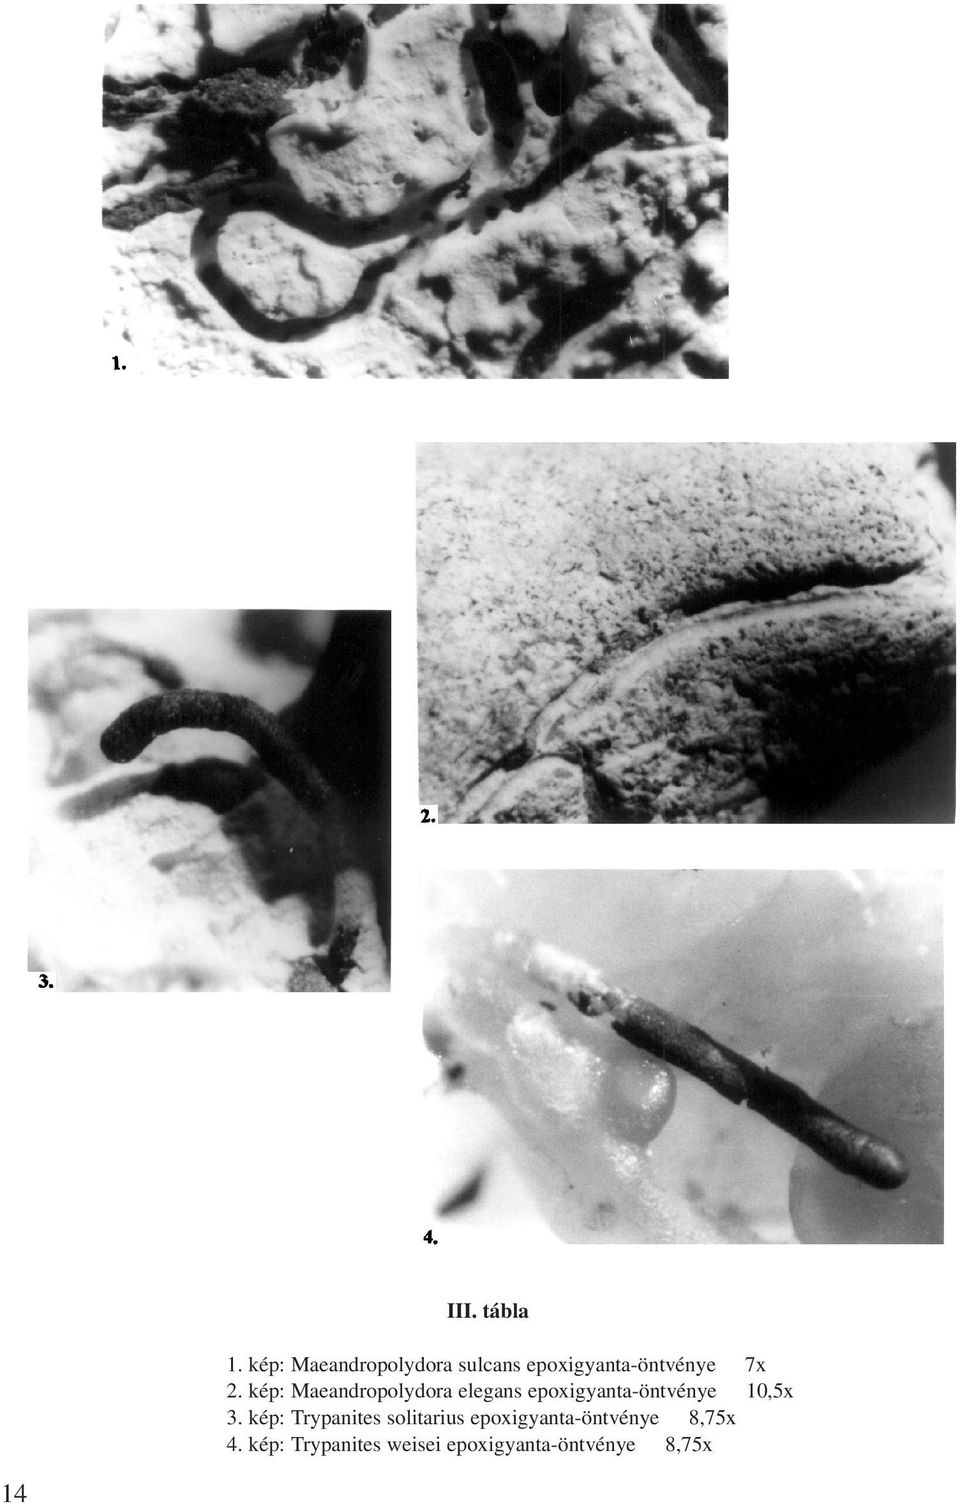 kép: Maeandropolydora elegans epoxigyanta-öntvénye 10,5x 3.